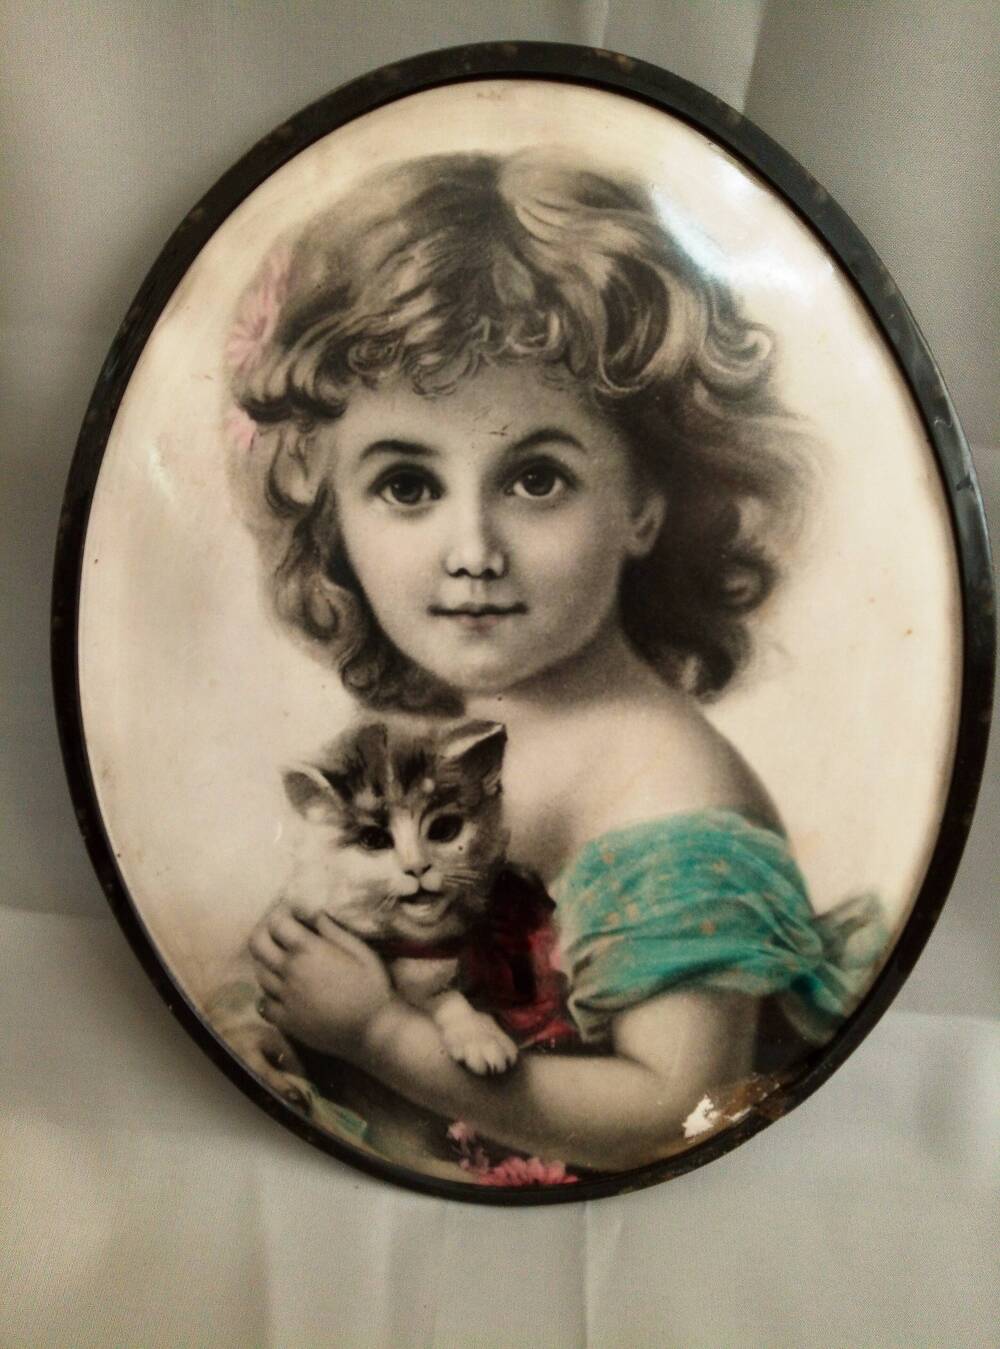 Фотографическая открытка «Девочка с котенком». Сувенирная фабрика. СССР, 1950-е гг.